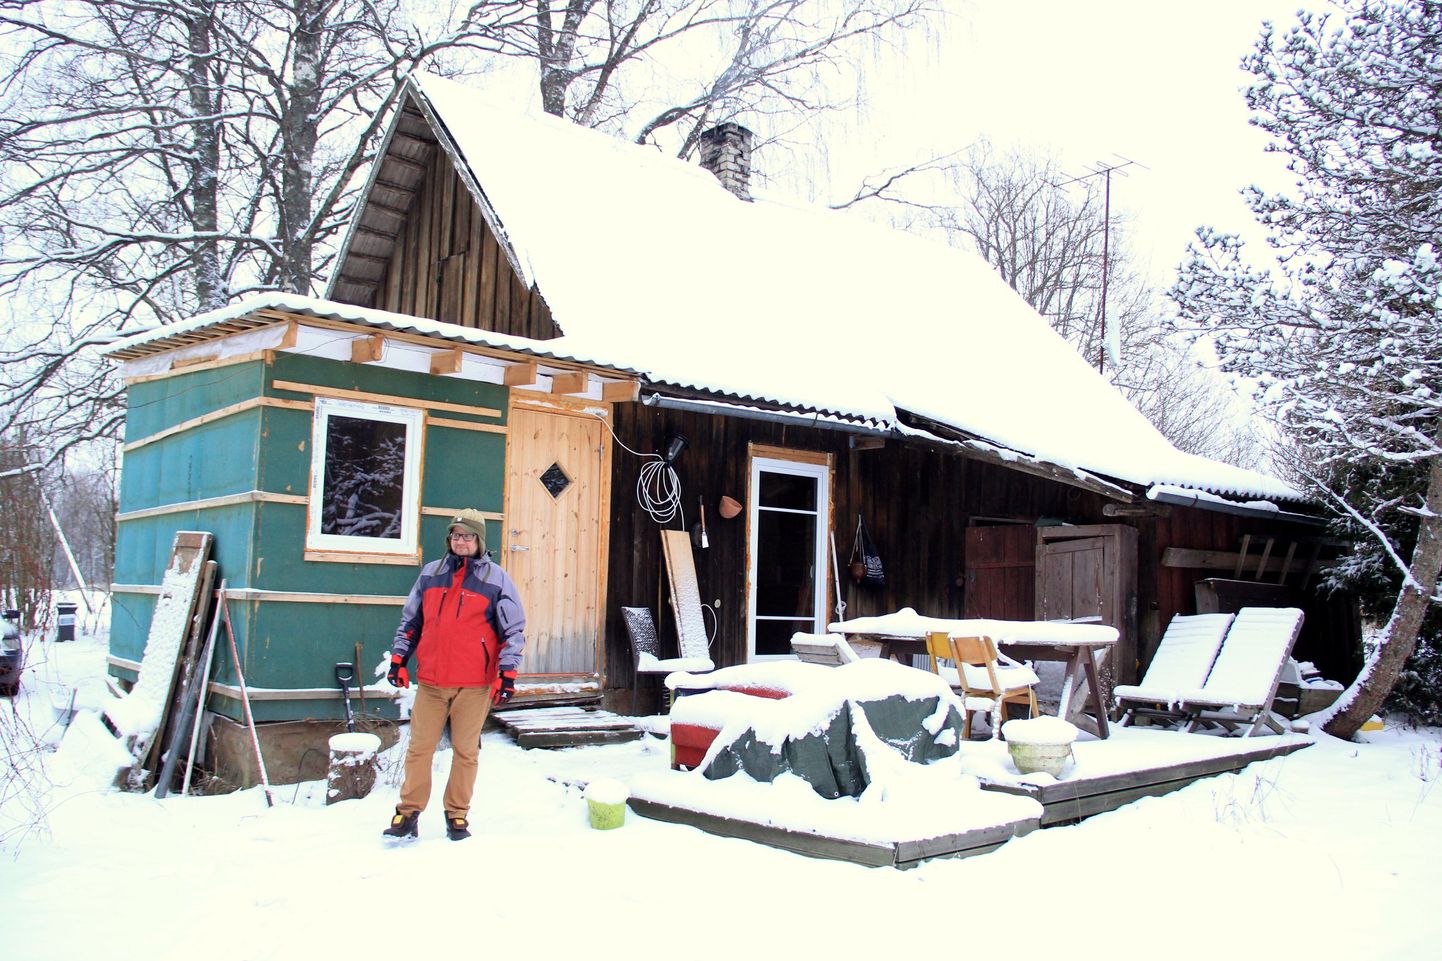 Üks Kirbu küla kõige uuemaid elanikke on Tammesalu talu peremees Marek Mekk. Algselt suvekoduna mõeldud majapidamine on järk-järgult püsivaks elupaigaks muutunud.